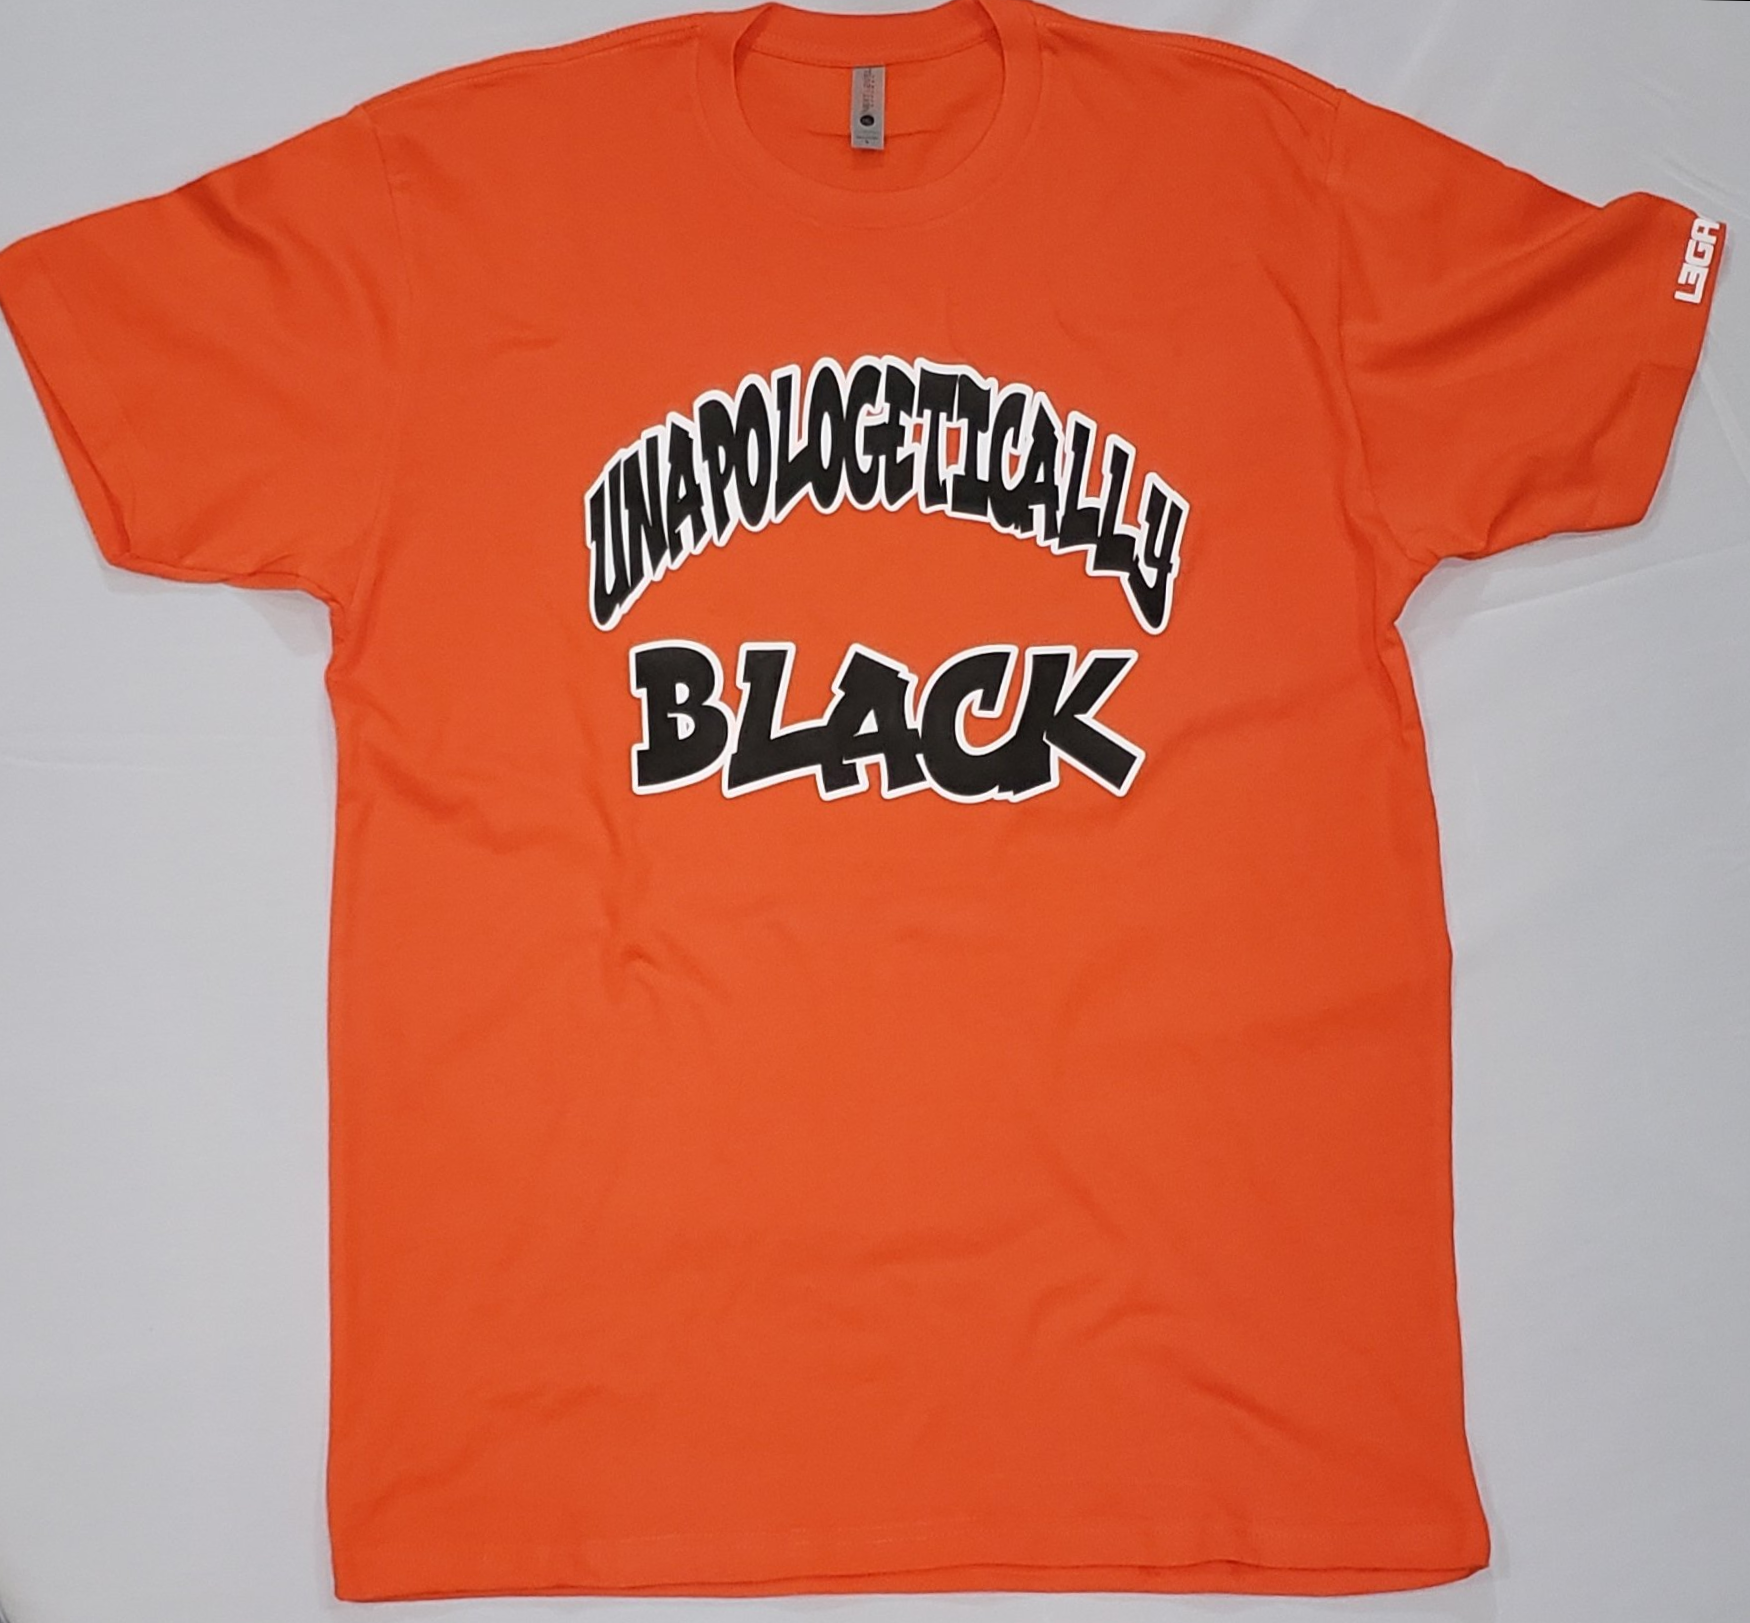 "Unapologetically Black"